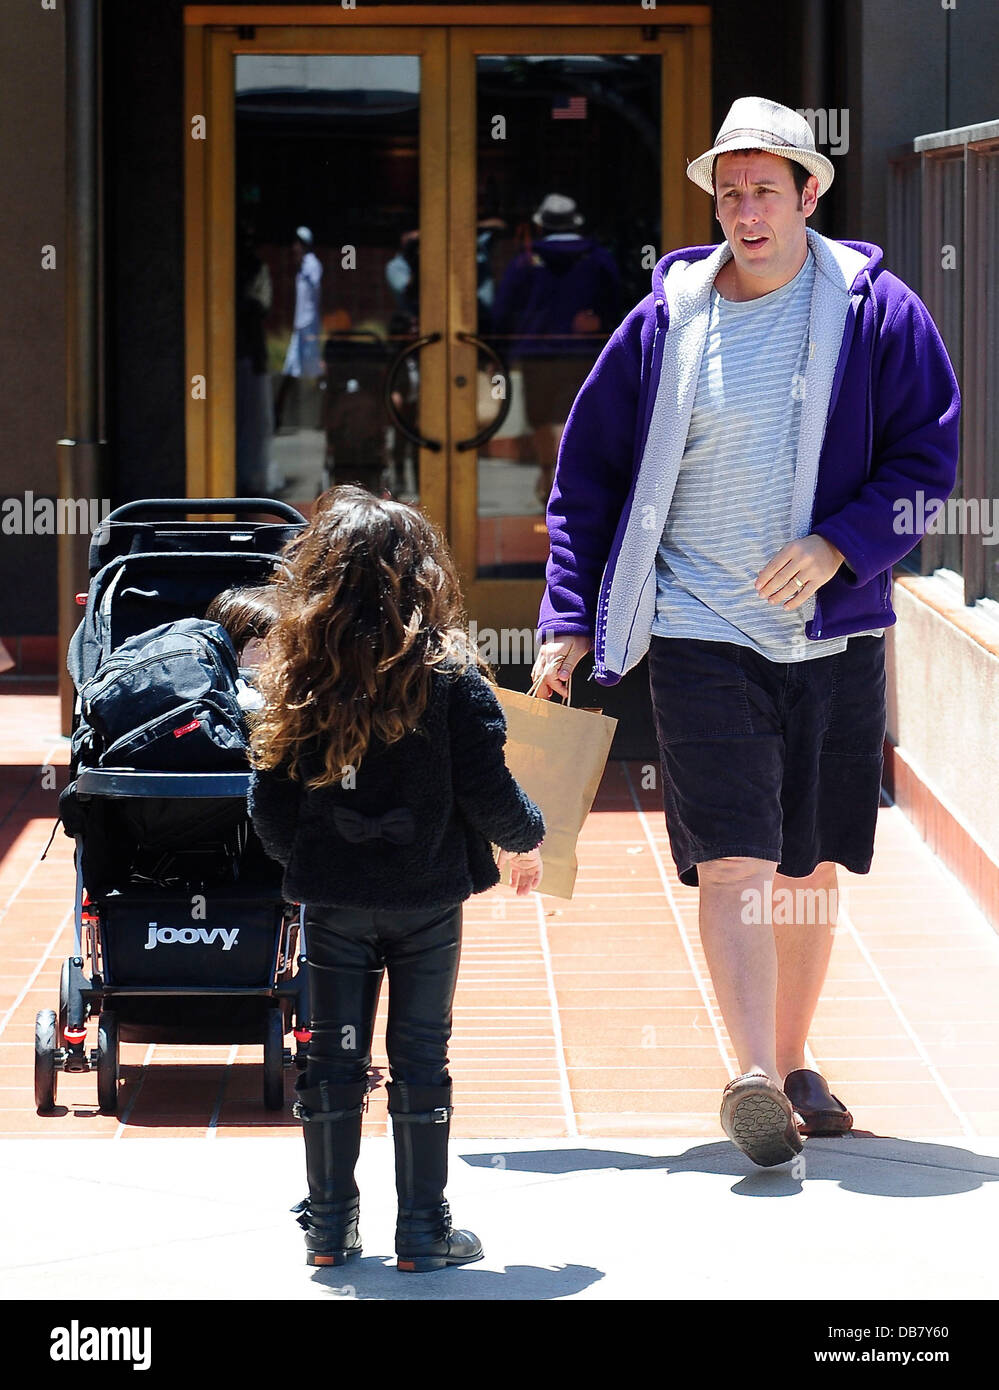 Adam Sandler Einkaufen mit seinen Töchtern Sadie und Sunny in Century City Mall in Beverly Hills, Los Angeles, Kalifornien, USA - 15.05.11 Stockfoto